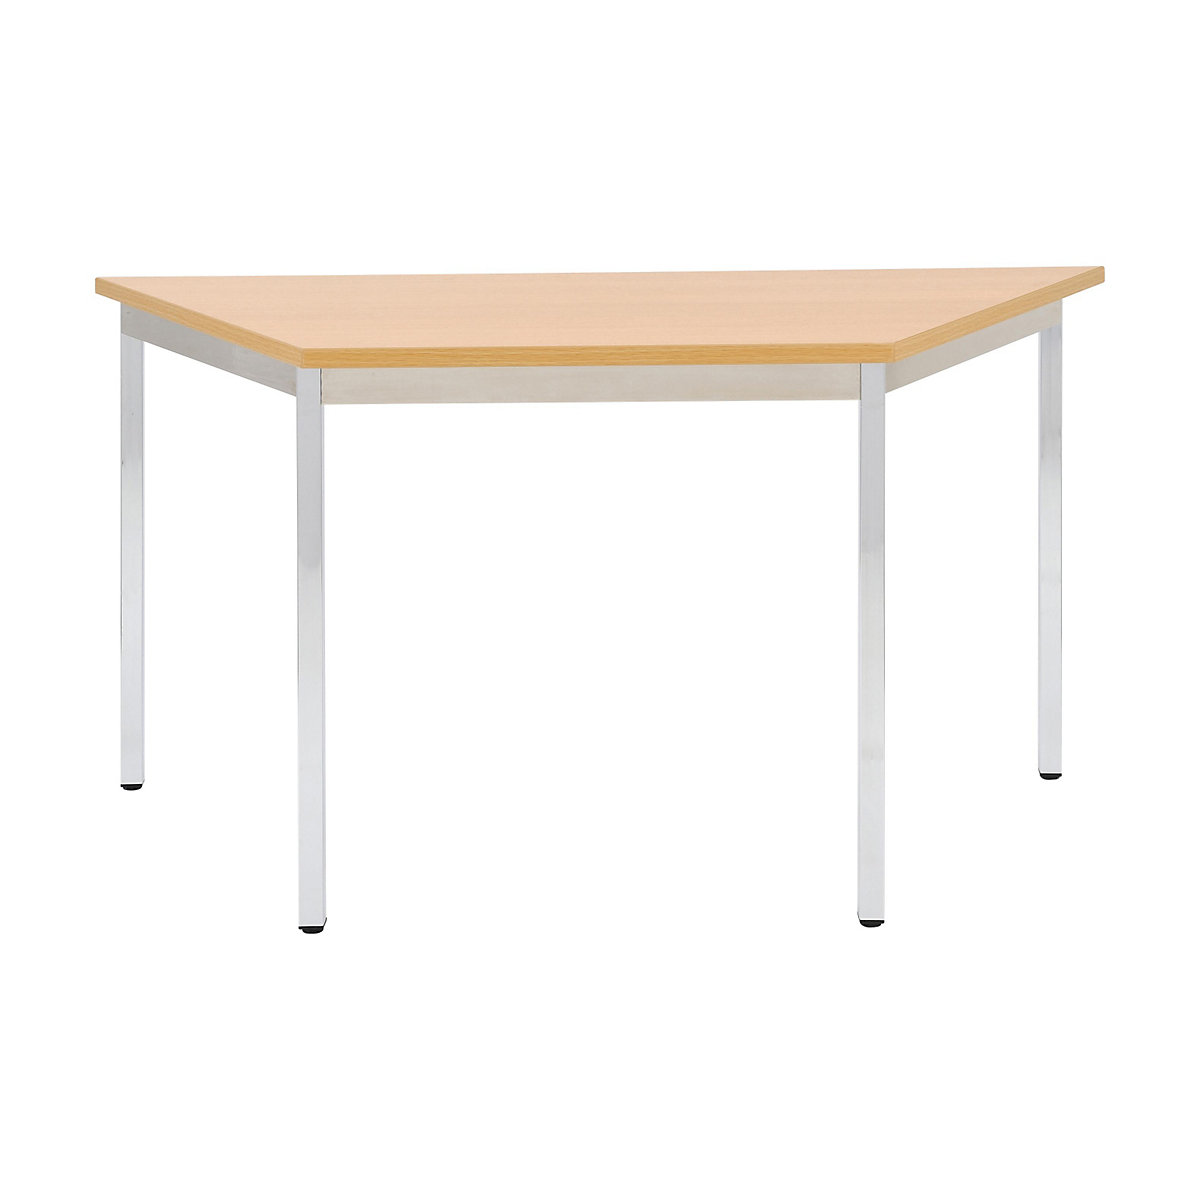 Universele tafel – eurokraft basic, trapeziumvormig, h x b x d = 740 x 1200 x 600 mm, blad beukenhoutdecor, frame verchroomd